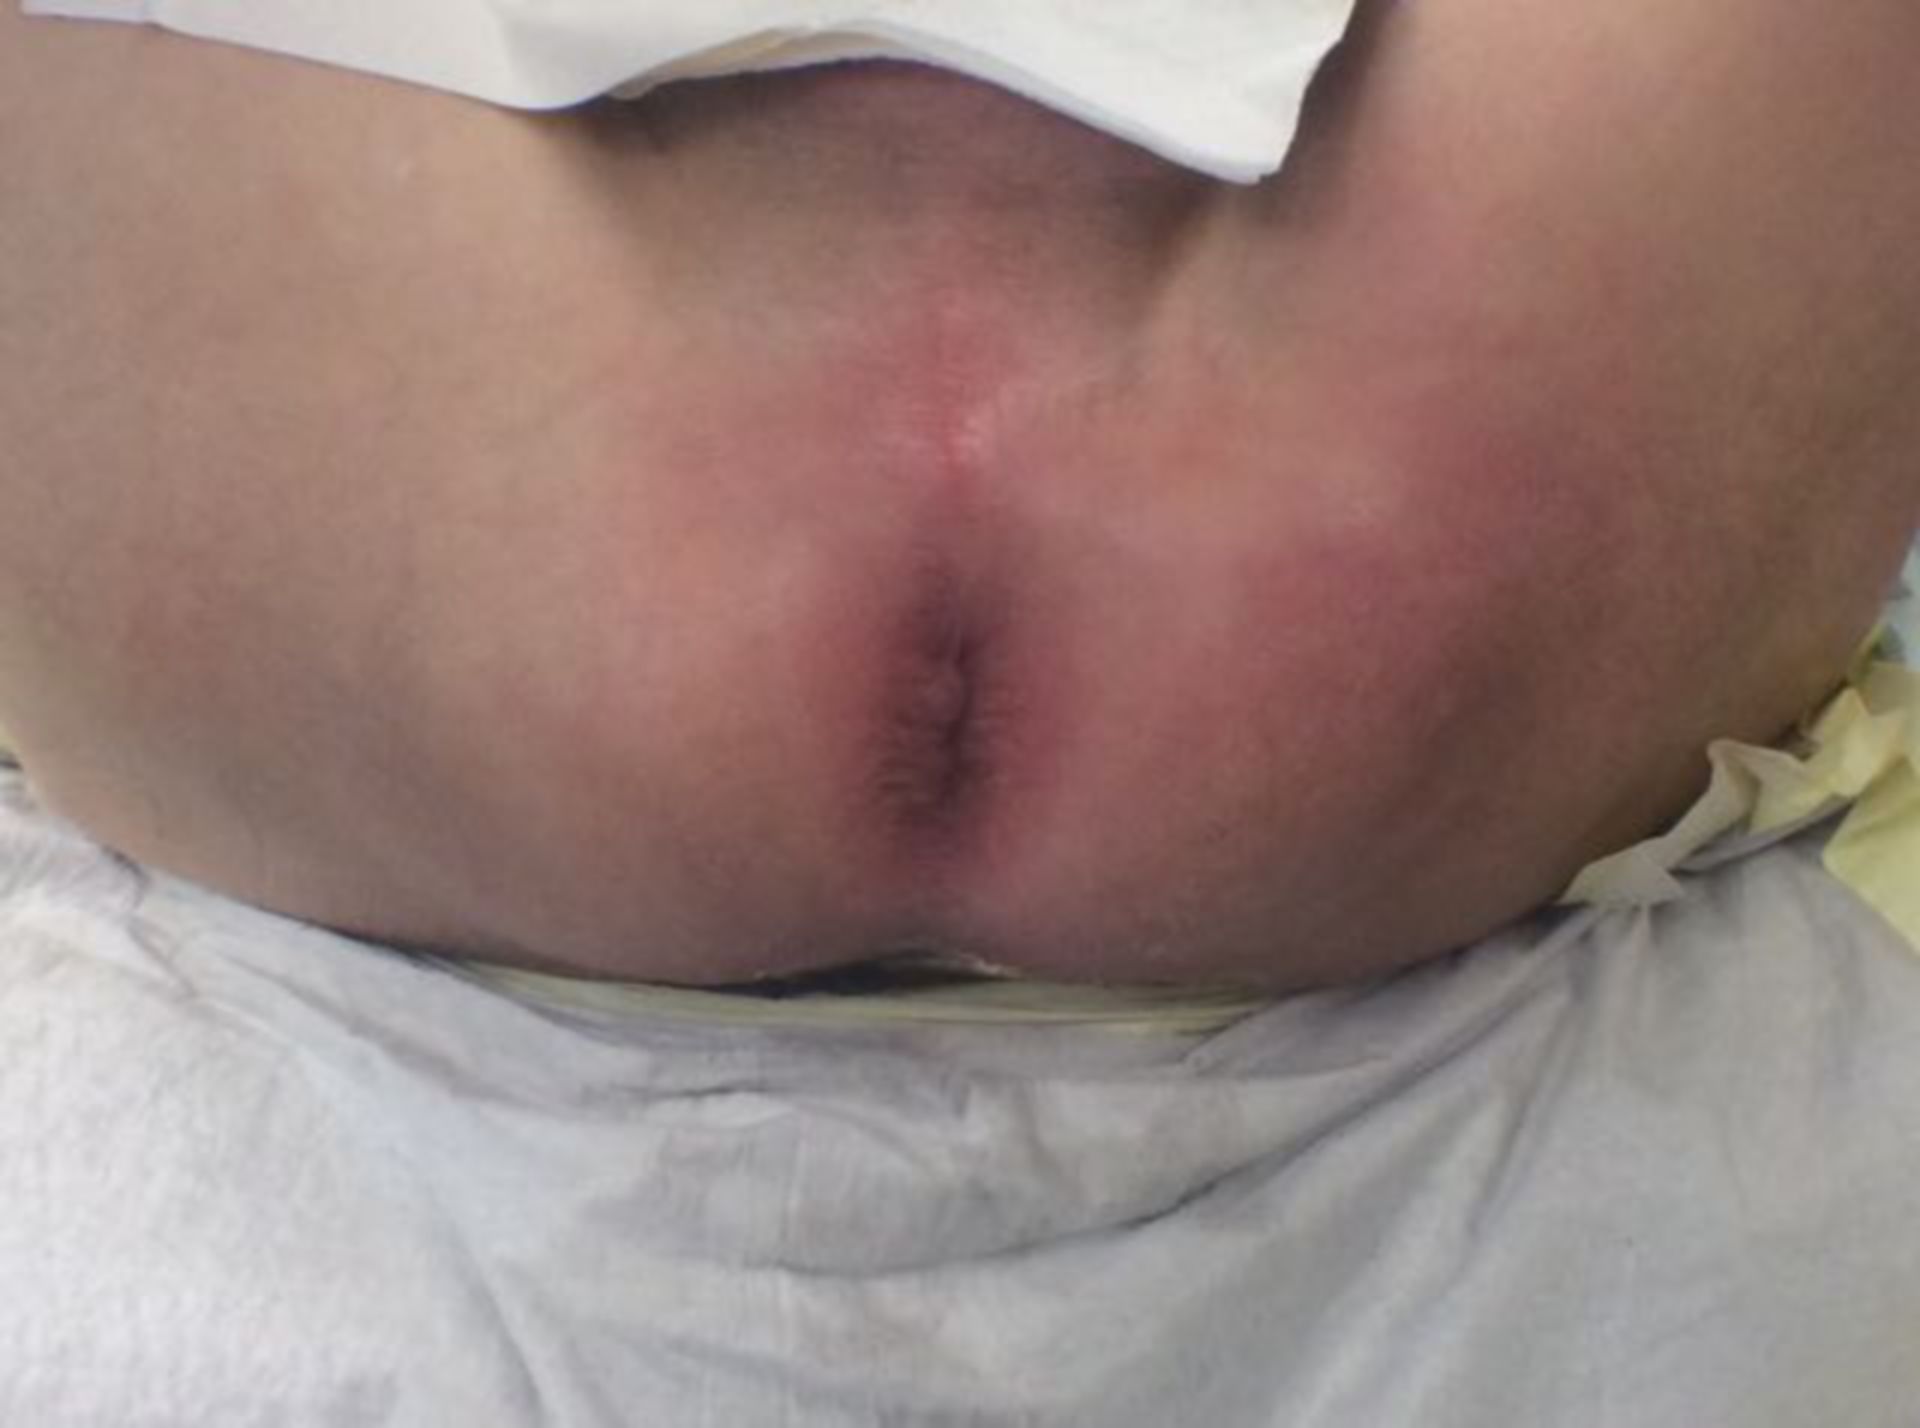 Fournier gangrene- not a classical anorectal abscess